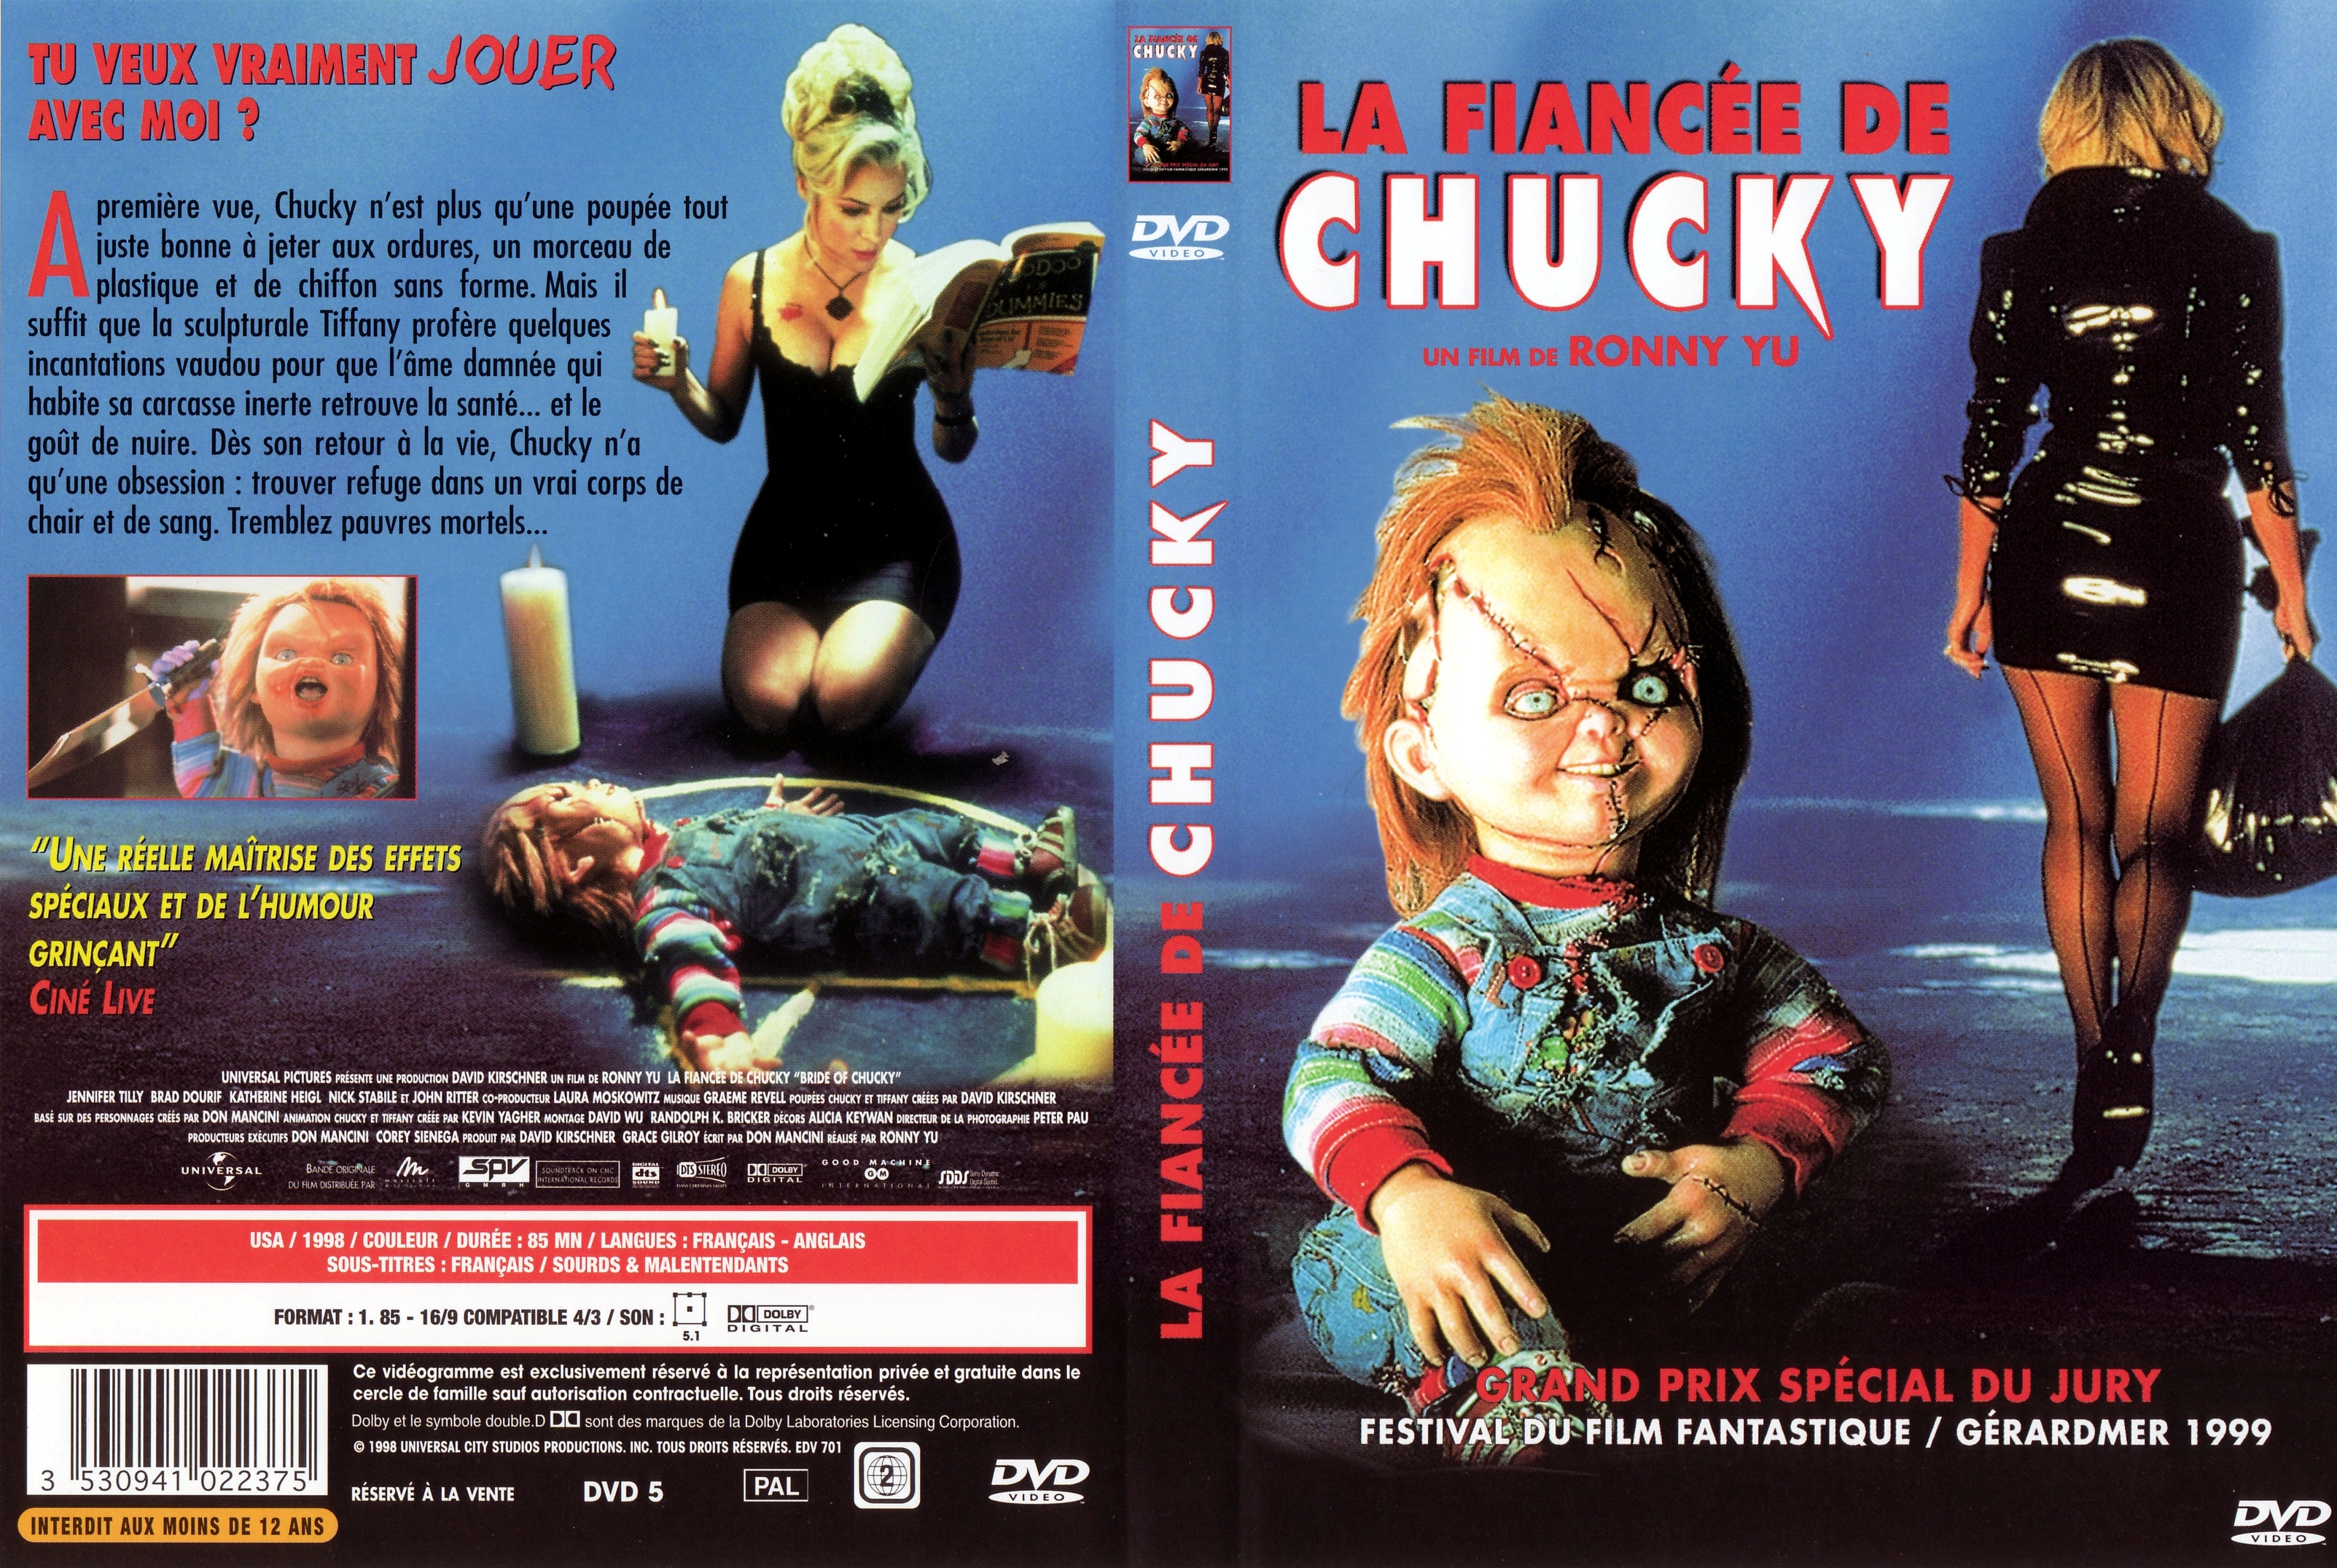 Jaquette DVD La fiance de Chucky v3